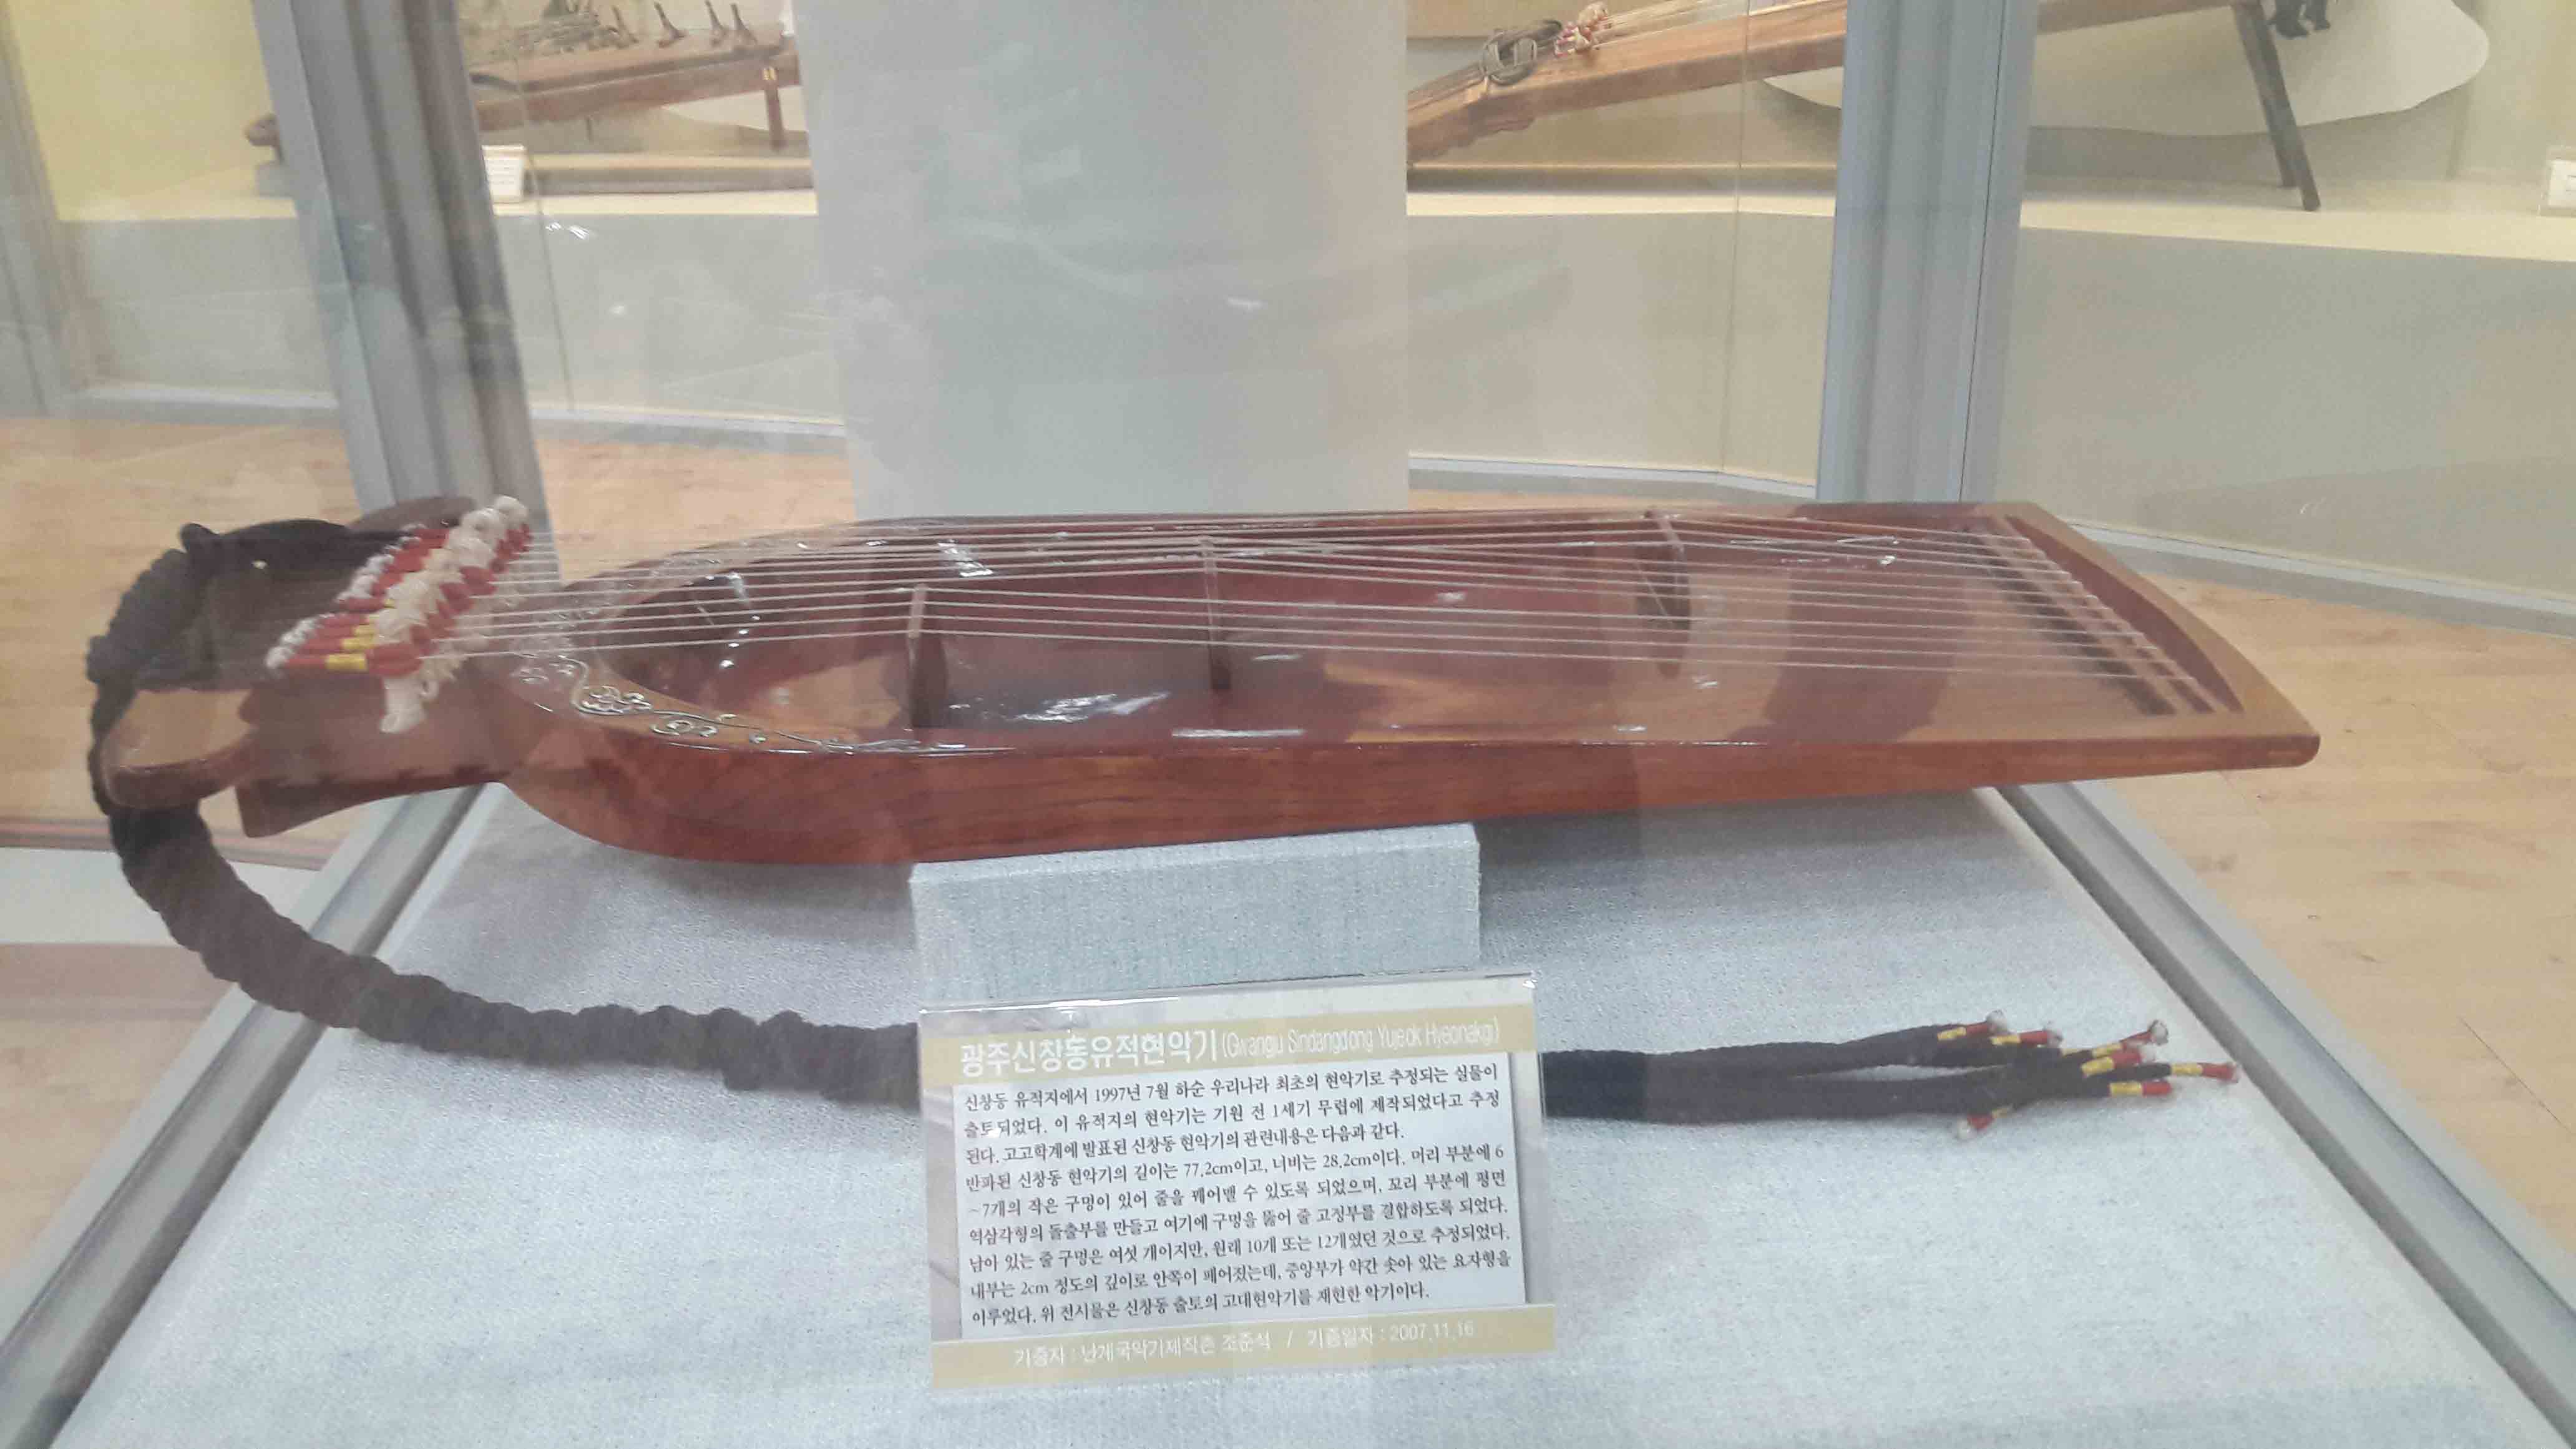 광주신창동유적현악기 (Changu Snaanging Yue hieoneto) | 신창동 유적지에서 1997년 7월 하순 우리나라 최초의 현악기로 추정되는 실물이 출토 되었다. 이 유적지의 현악기는 기원 전 1세기 무렵에 제작되었다고 추정 된다. 고고학계에 발표된 신창동 현악기의 관련내용은 다음과 같다. 반파된 신창동 현악기의 길이는 77.2cm이고, 너비는 28.2cm이다. 머리 부분에 6 ~7개의 작은 구멍이 있어 줄을 꿰어맨 수 있도록 되었으며, 꼬리 부분에 핑면 역삼각형의 돌출부를 만들고 여기에 구멍을 뚫어 줄 고정부를 결함이도록 되었다. 남이 있는 줄 구멍은 여섯 개이지만, 원래 10개 또는 12개였던 것으로 추정되었다. 내부는 2cm 정도의 깊이로 안쪽이 끼어있는데, 중앙부가 약간 솟아 있는 요지형을 이루었다. 위 전시물은 신창동 출토의 고대현악기를 재현한 악기이다.